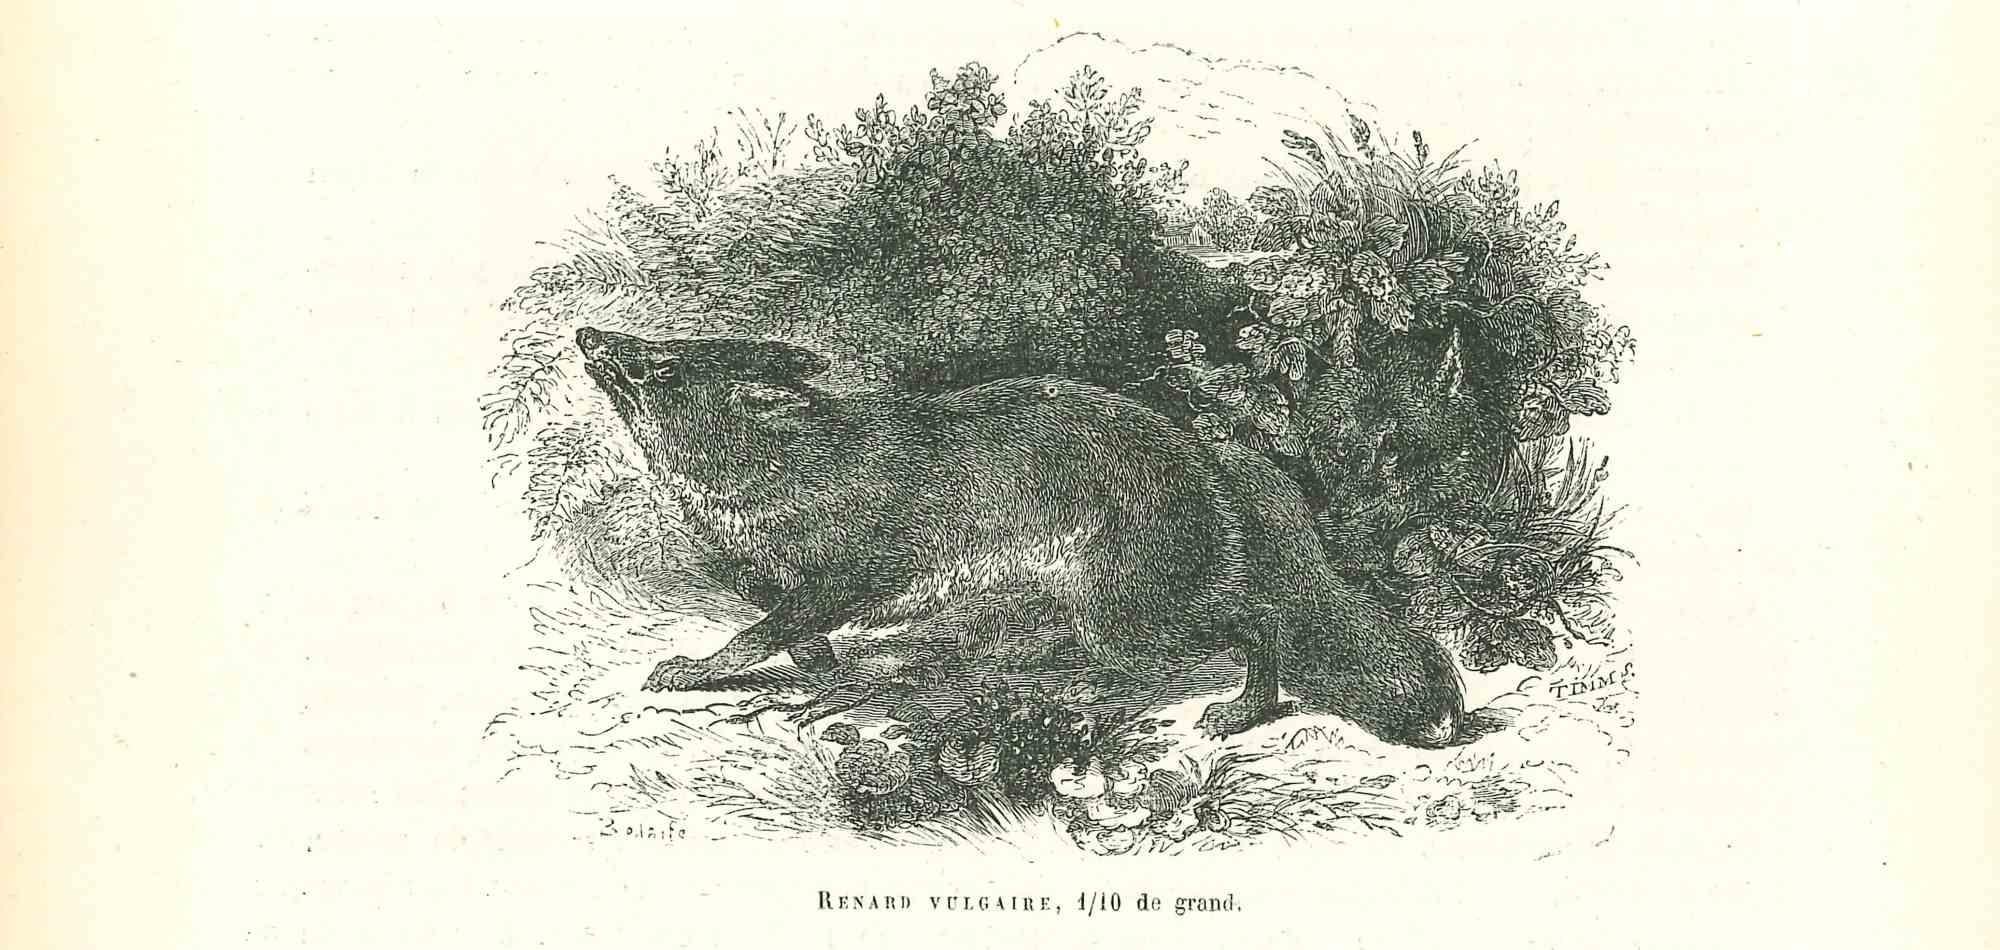 Le Loup est une lithographie originale sur papier couleur ivoire, réalisée par Paul Gervais (1816-1879). L'œuvre est tirée de la série "Les Trois Règnes de la Nature", et a été publiée en 1854.

Bonnes conditions.

Titré sur le bas. Avec les notes